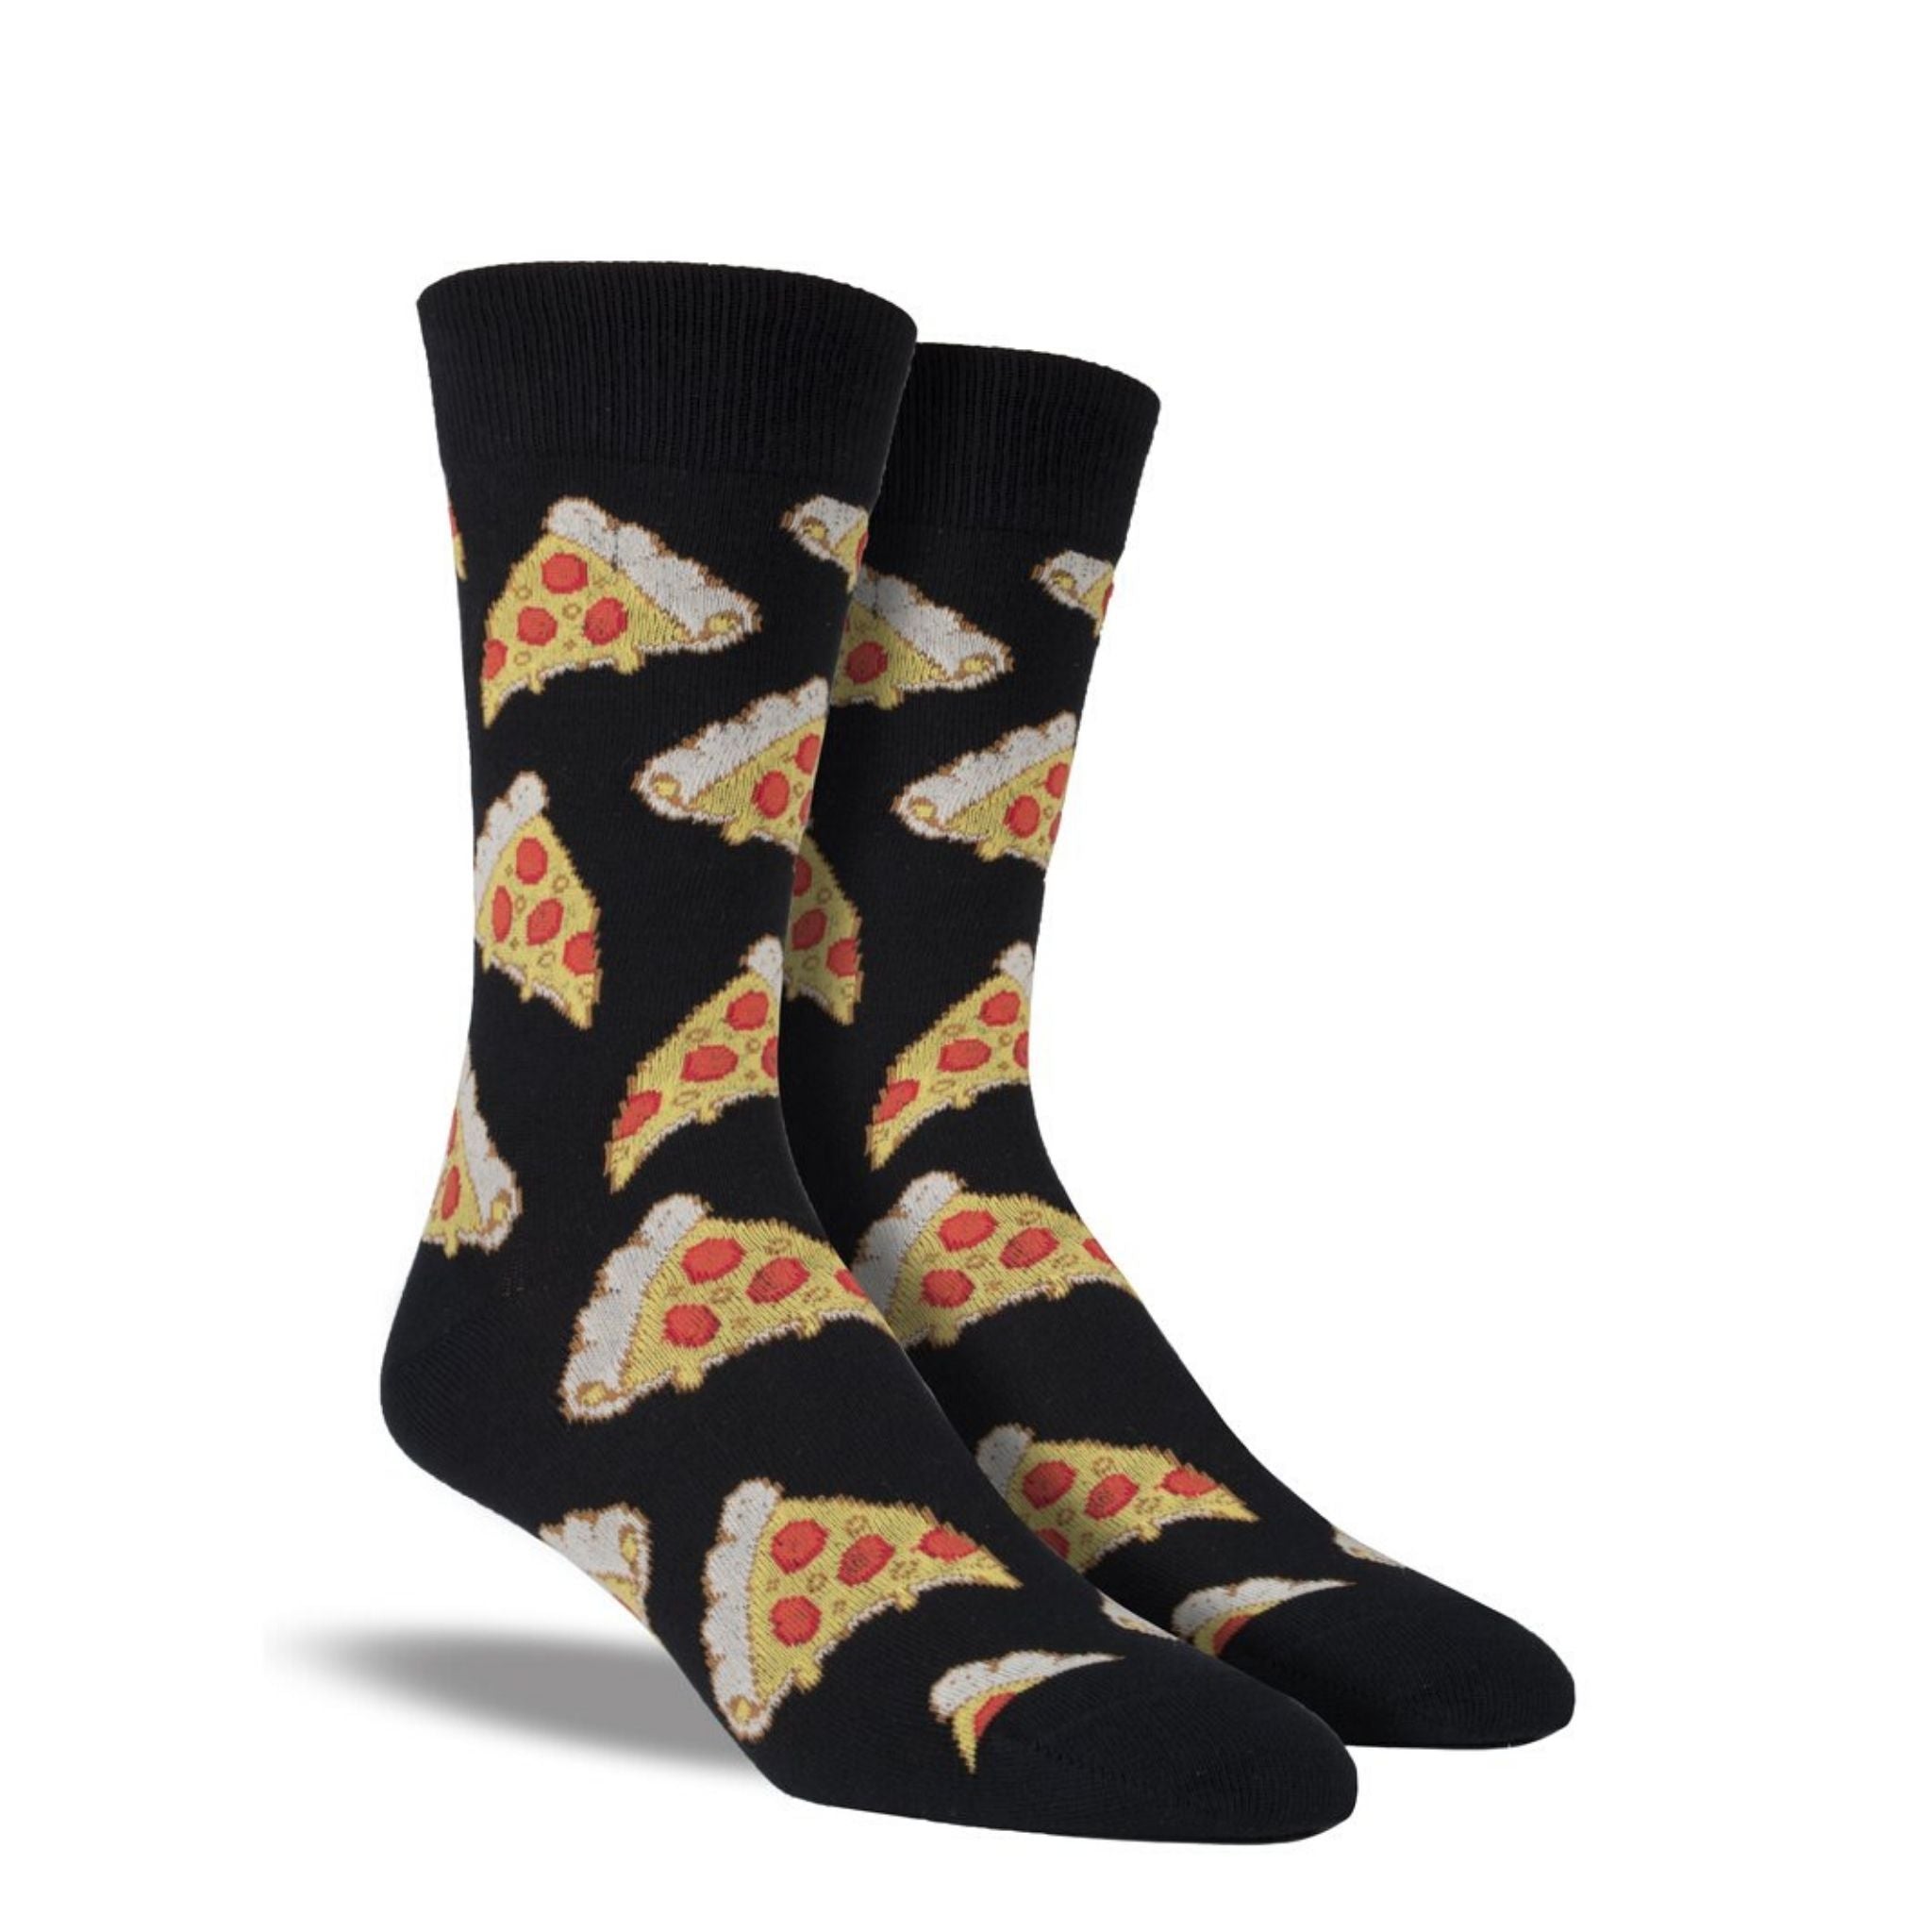 Black socks with pizza slice pattern